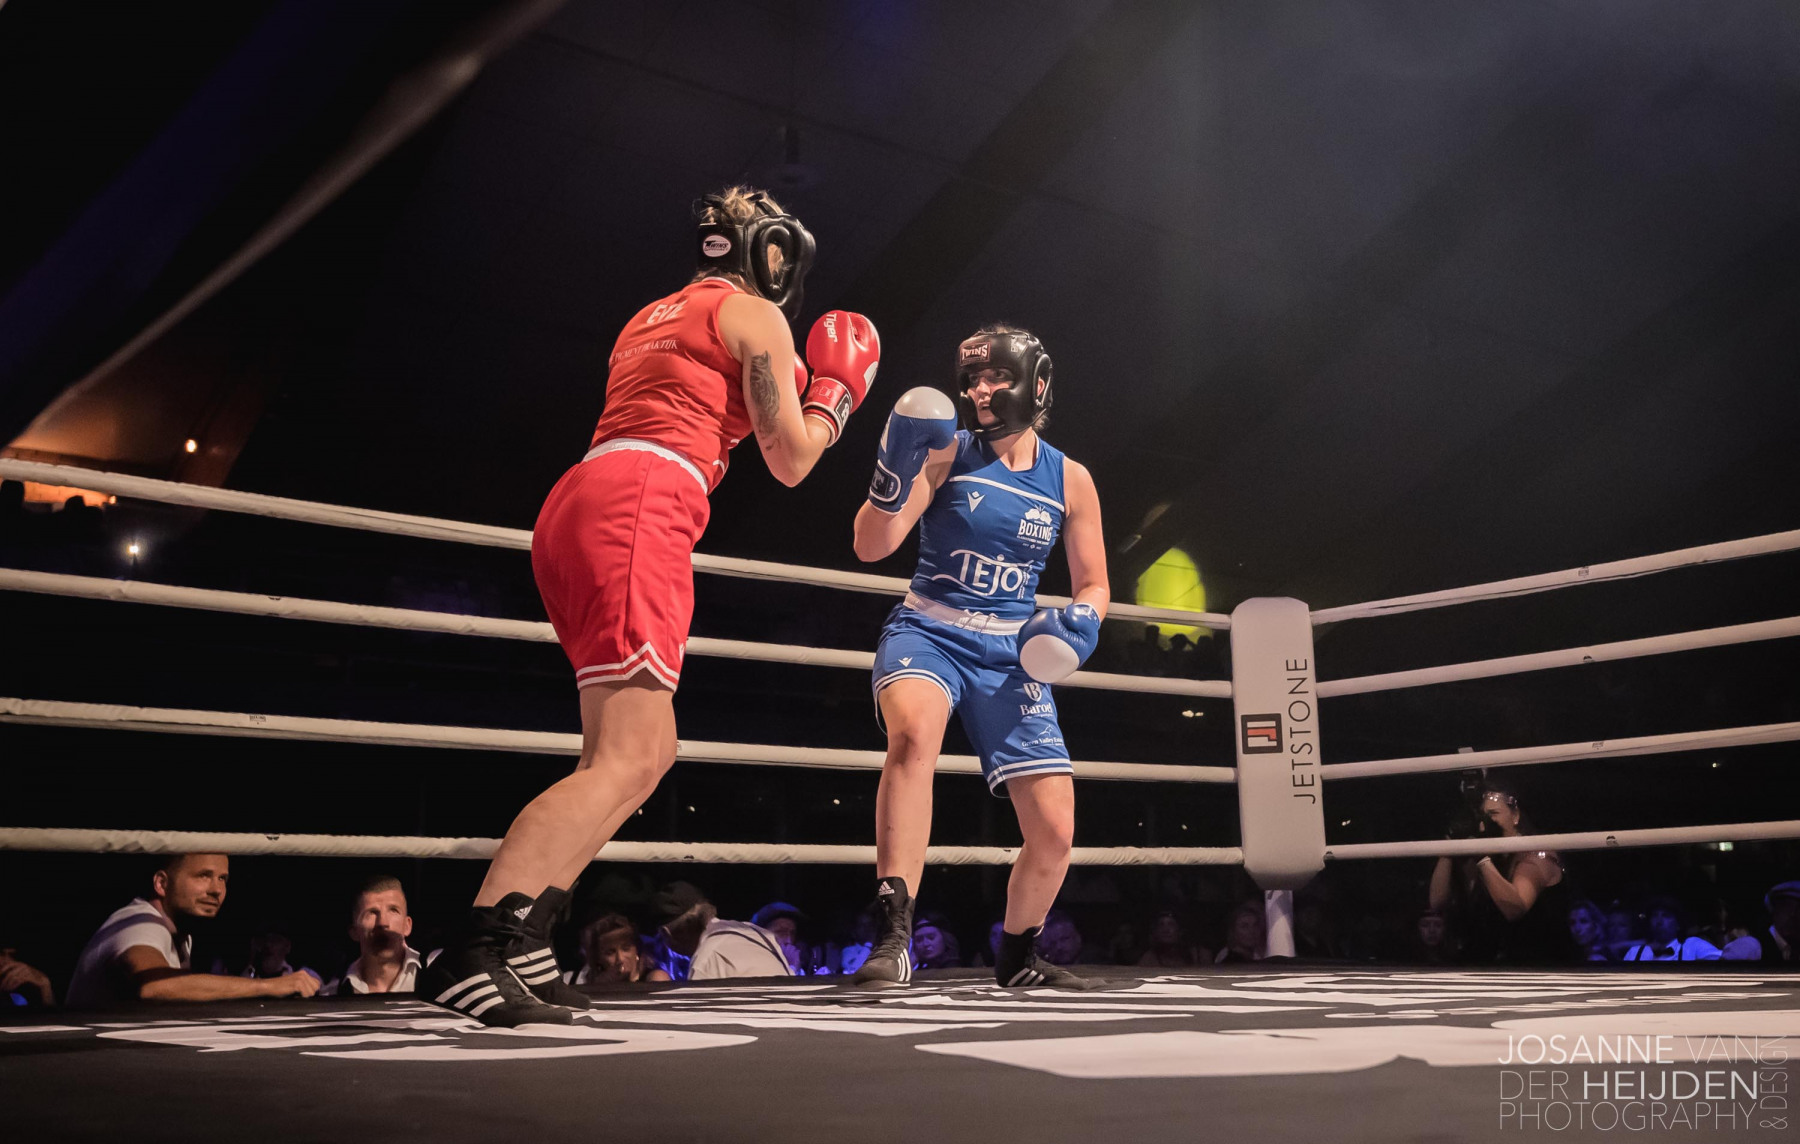 Boxing_Gladiatoren_van_Deurne_Evie-van-der-Heijden-vs-Janine-van-den-Eijnden_09072022_Foto_Josanne_van_der_Heijden-4131